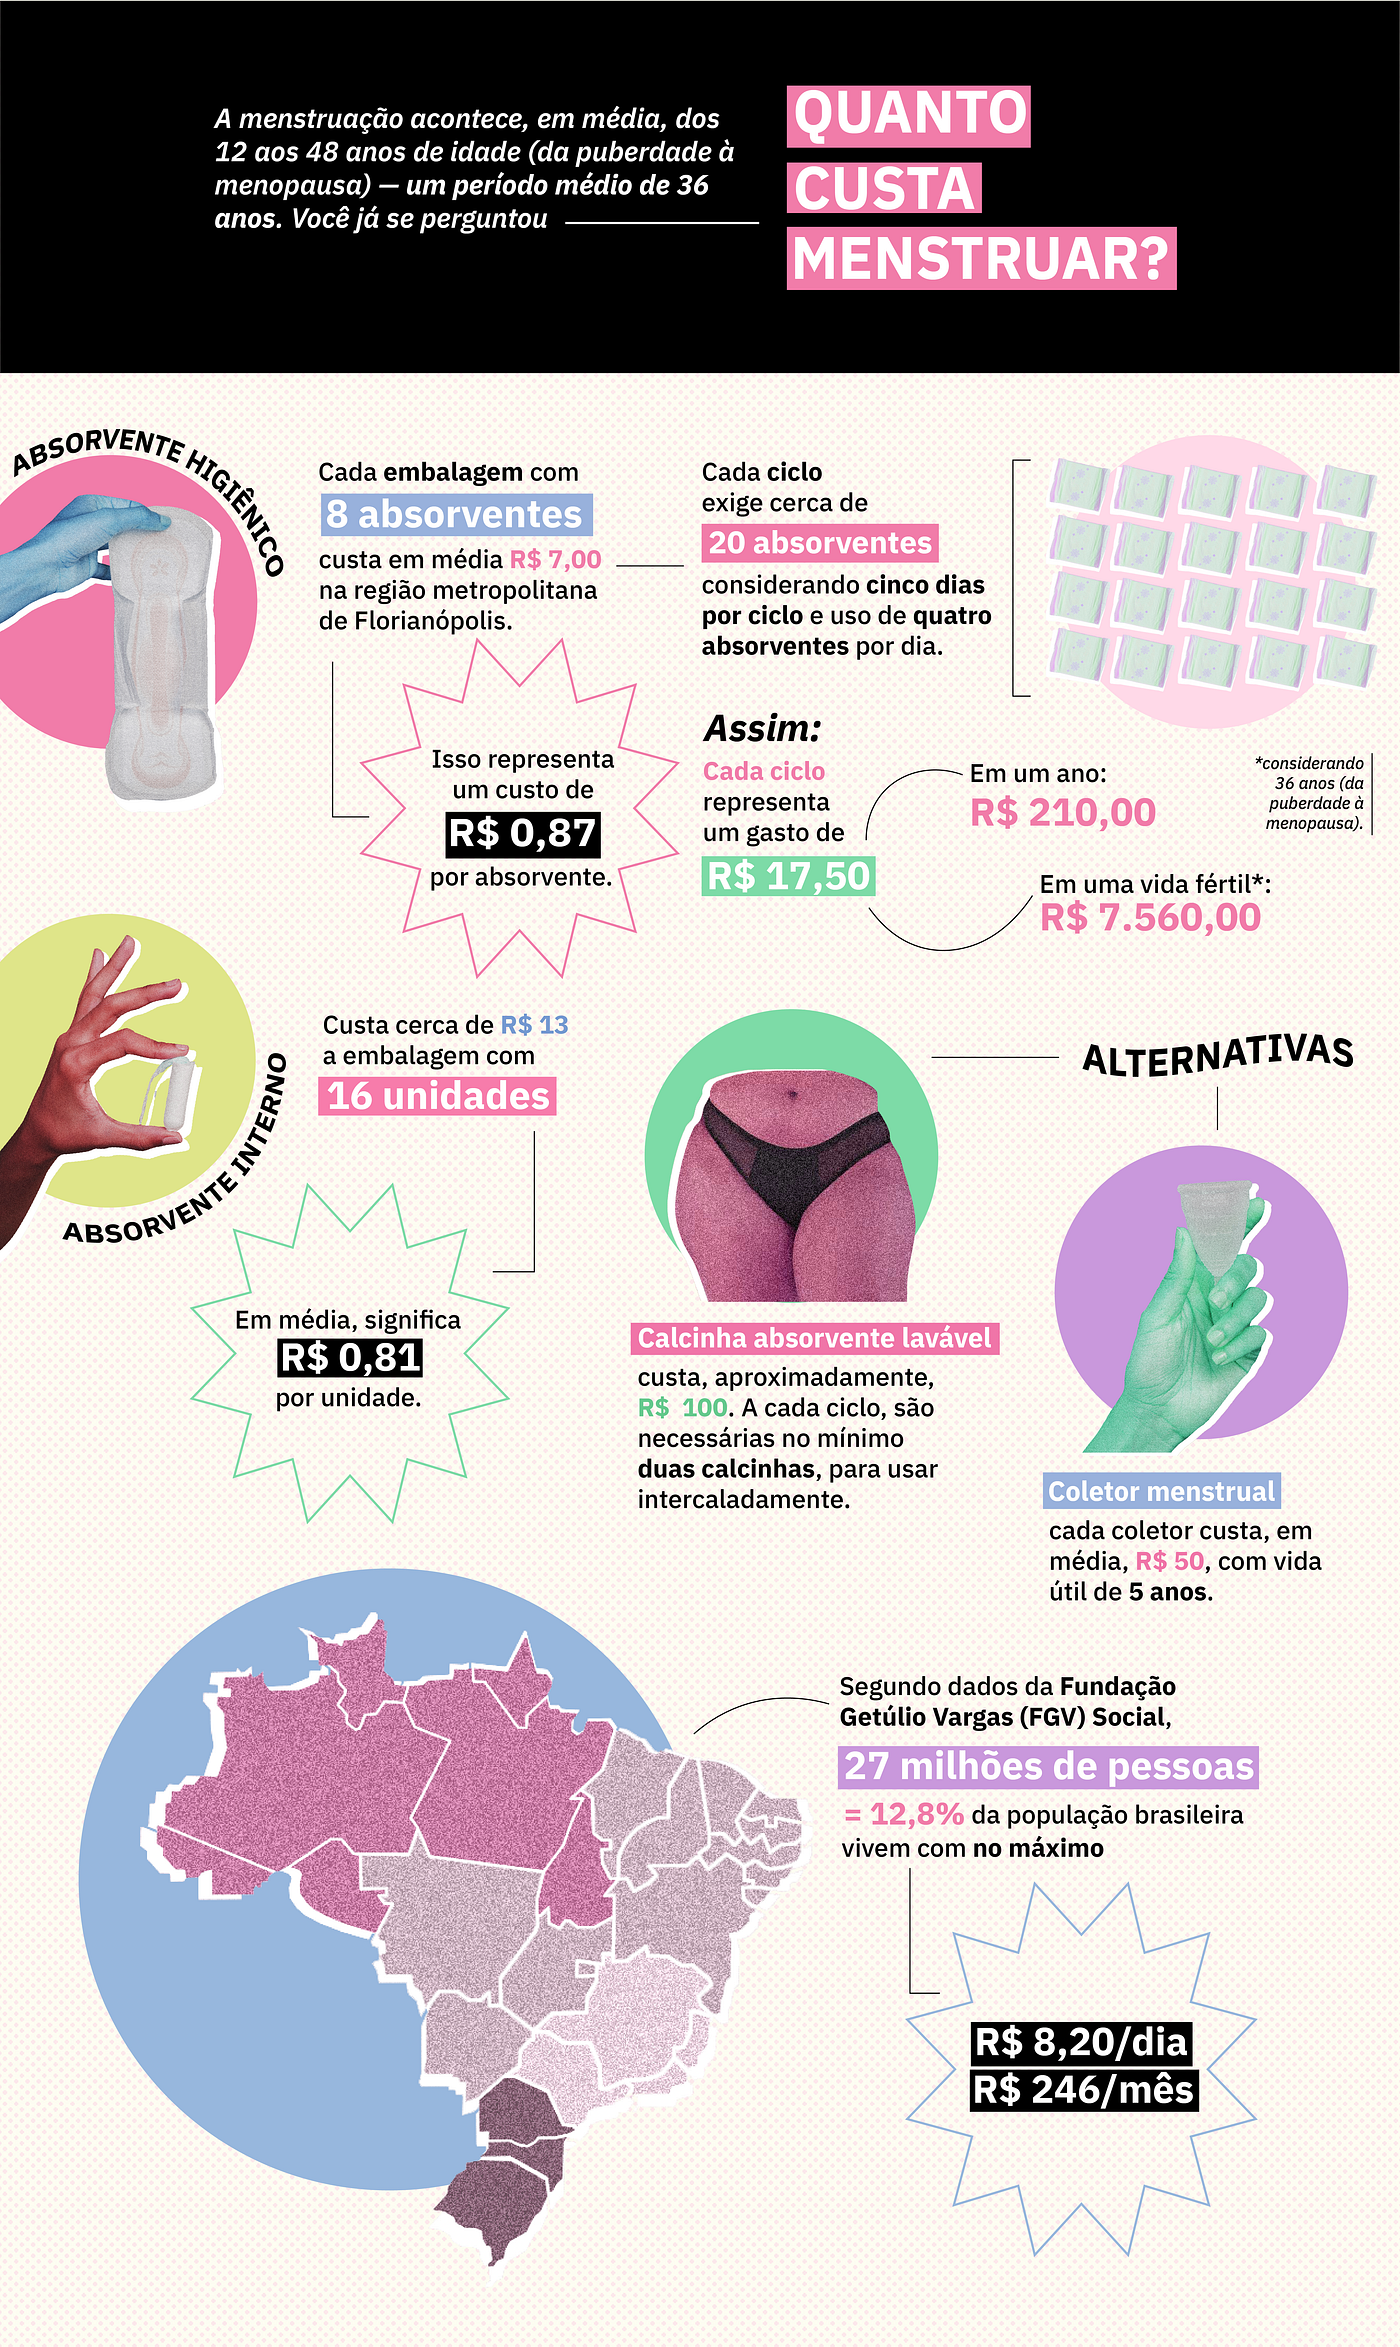 Pobreza menstrual: um panorama sobre o cenário indigno no Brasil